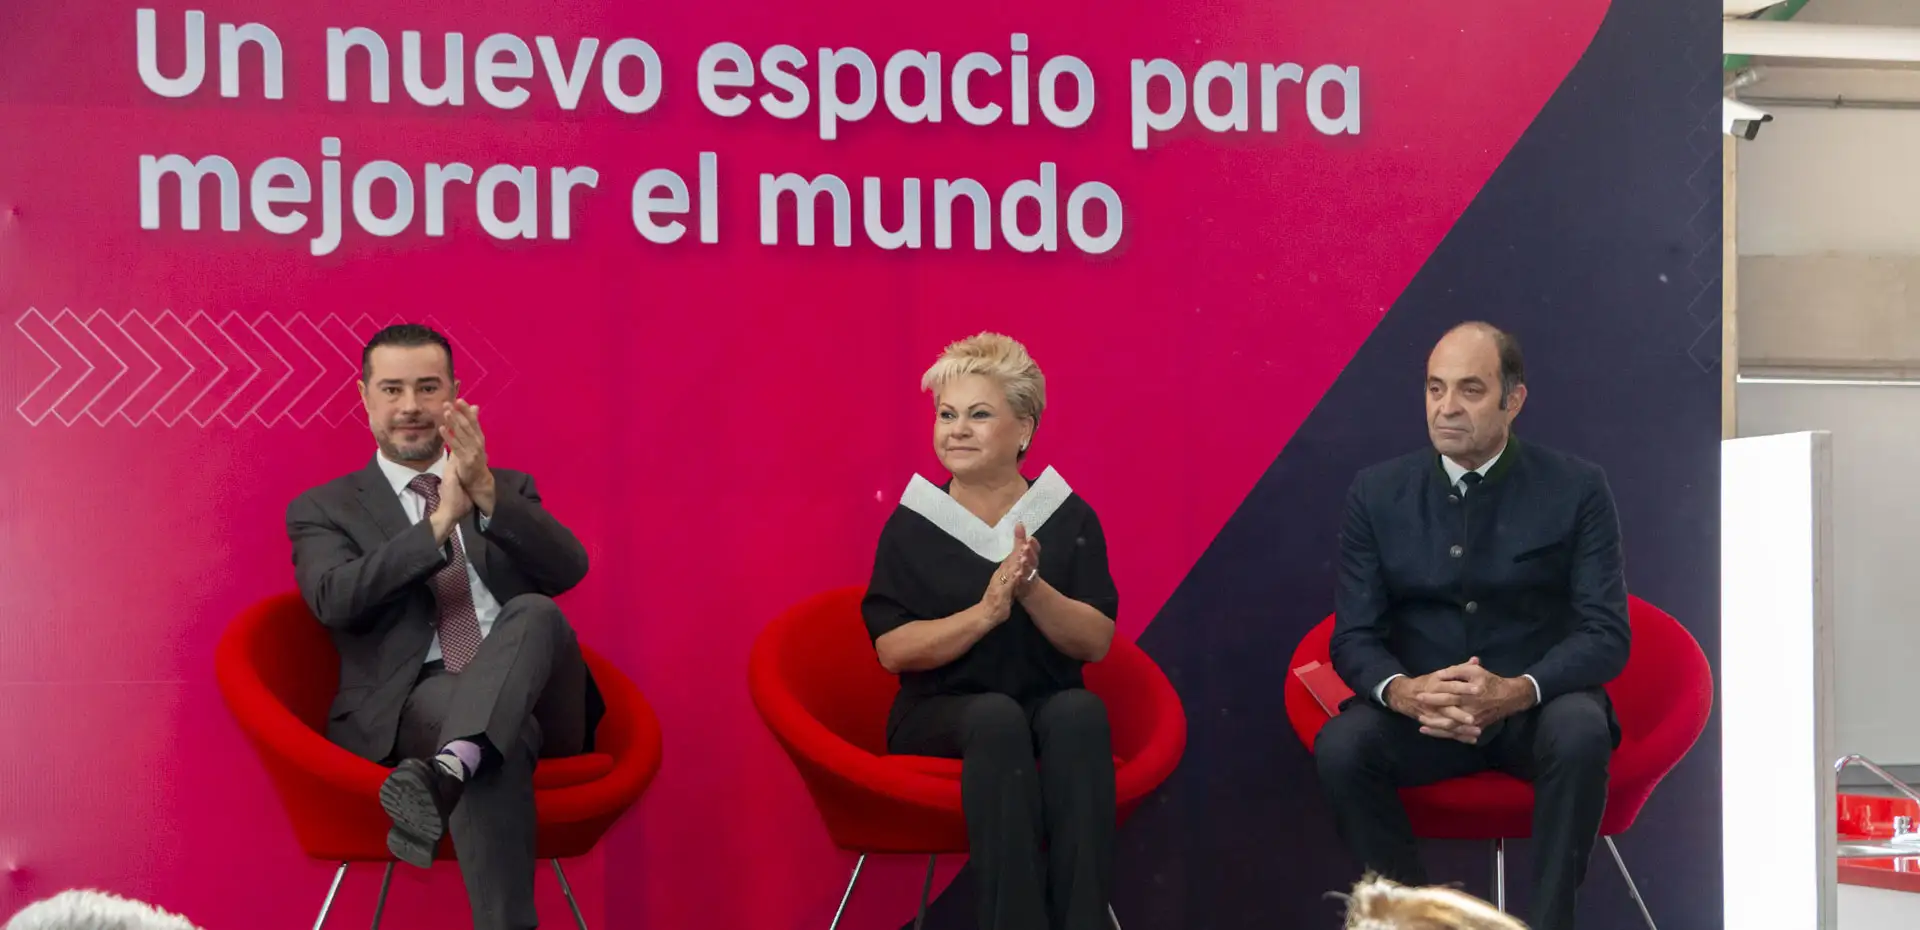 Mario Patrón Sánchez, María Isabel Merlo Talavera y Federico Bautista Alonso